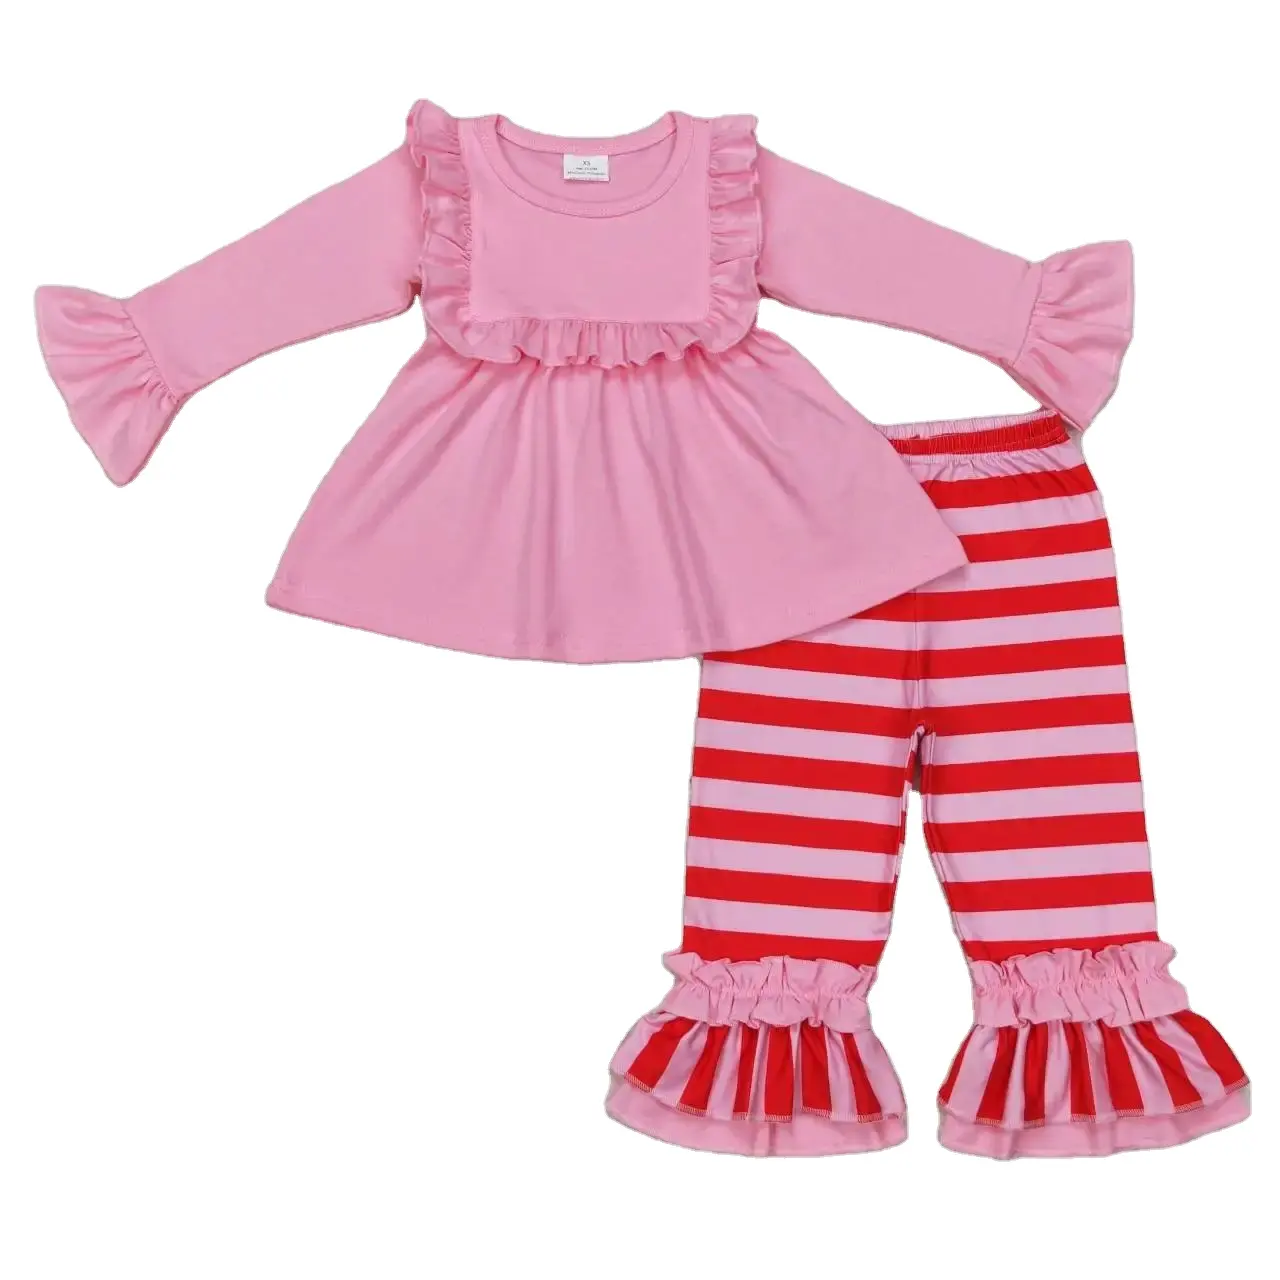 Venta al por mayor caliente occidental boutique traje de bebé Niñas Ropa de encaje rosa de manga larga a rayas rojas pantalón niños nuevo diseño